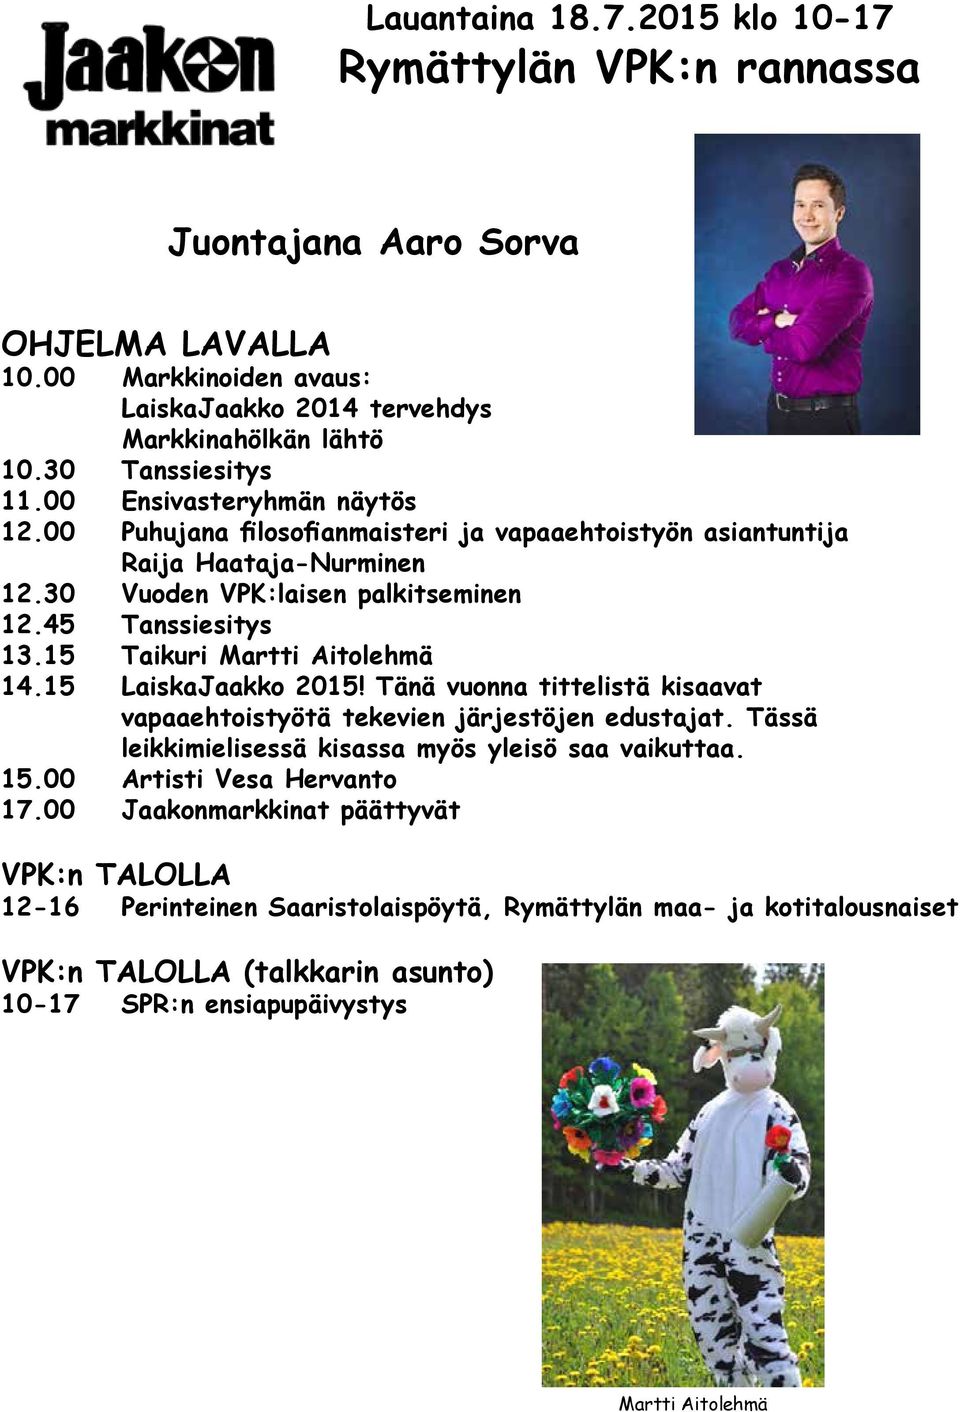 15 Taikuri Martti Aitolehmä 14.15 LaiskaJaakko 2015! Tänä vuonna tittelistä kisaavat vapaaehtoistyötä tekevien järjestöjen edustajat. Tässä leikkimielisessä kisassa myös yleisö saa vaikuttaa. 15.